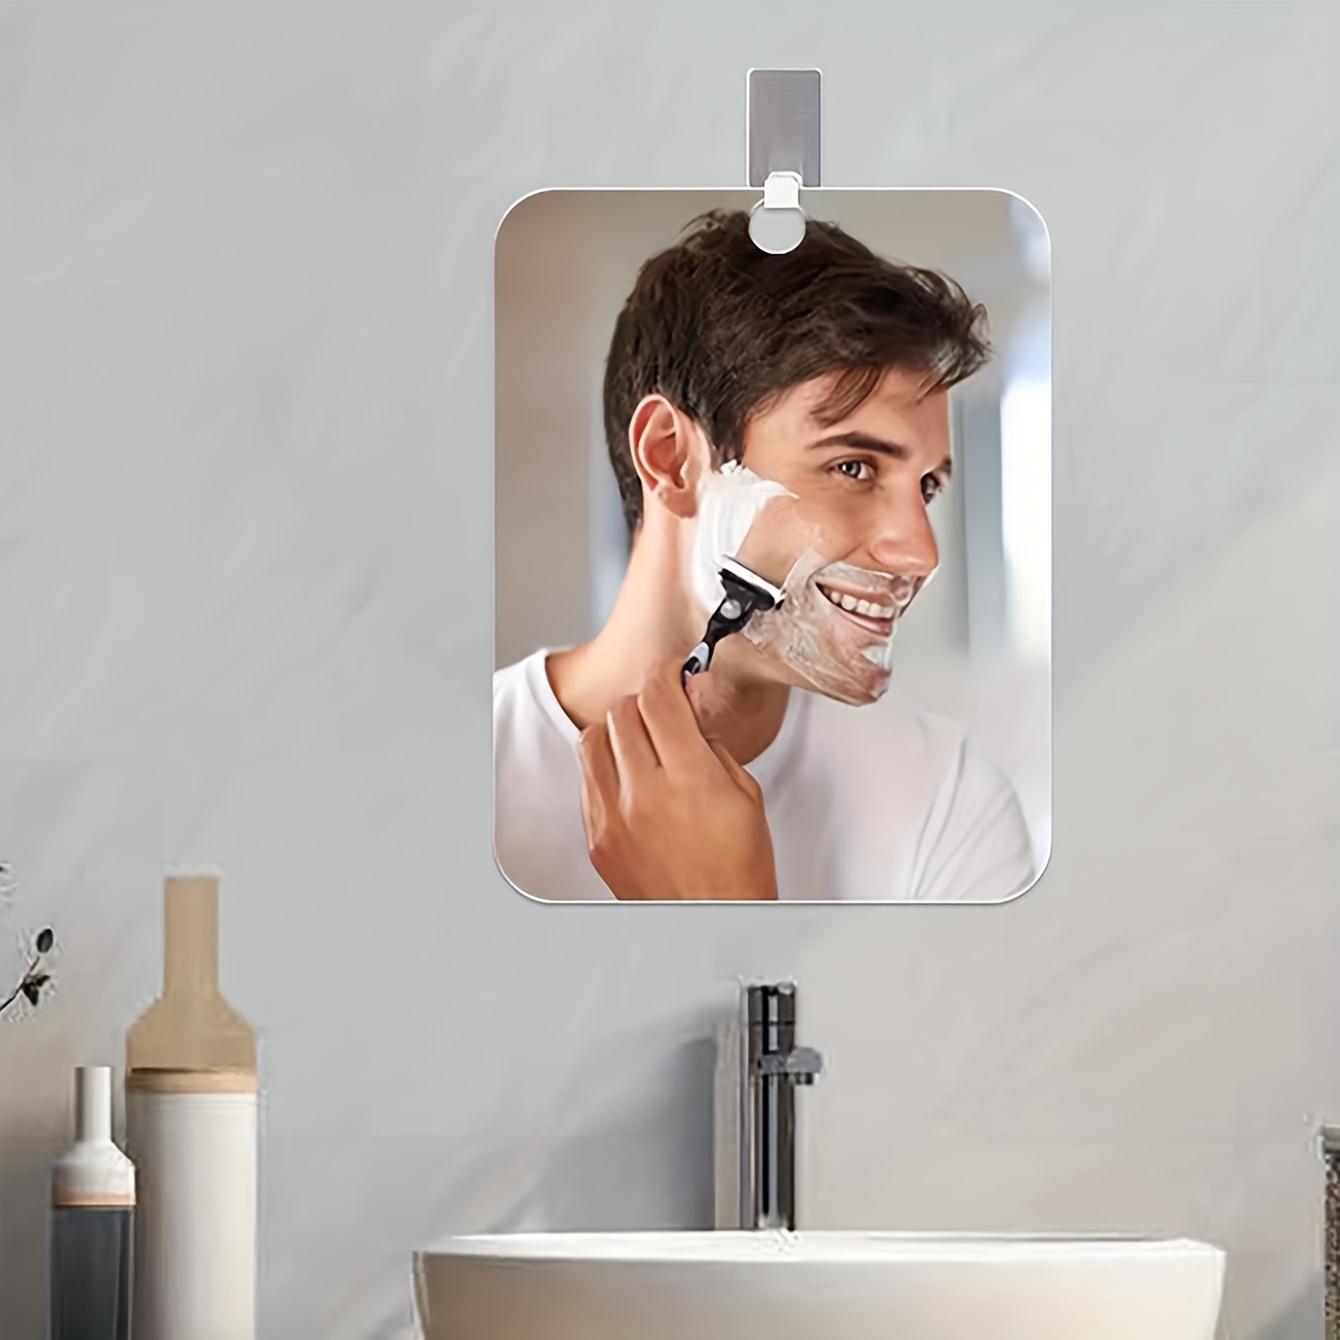 Duschspiegel, Beschlagfrei, Zum Rasieren, Wandaufhängung,  Badezimmerspiegel, Quadratisch, Tragbar, Anti-Beschlag-Glasspiegel Mit  Rasiererhalter